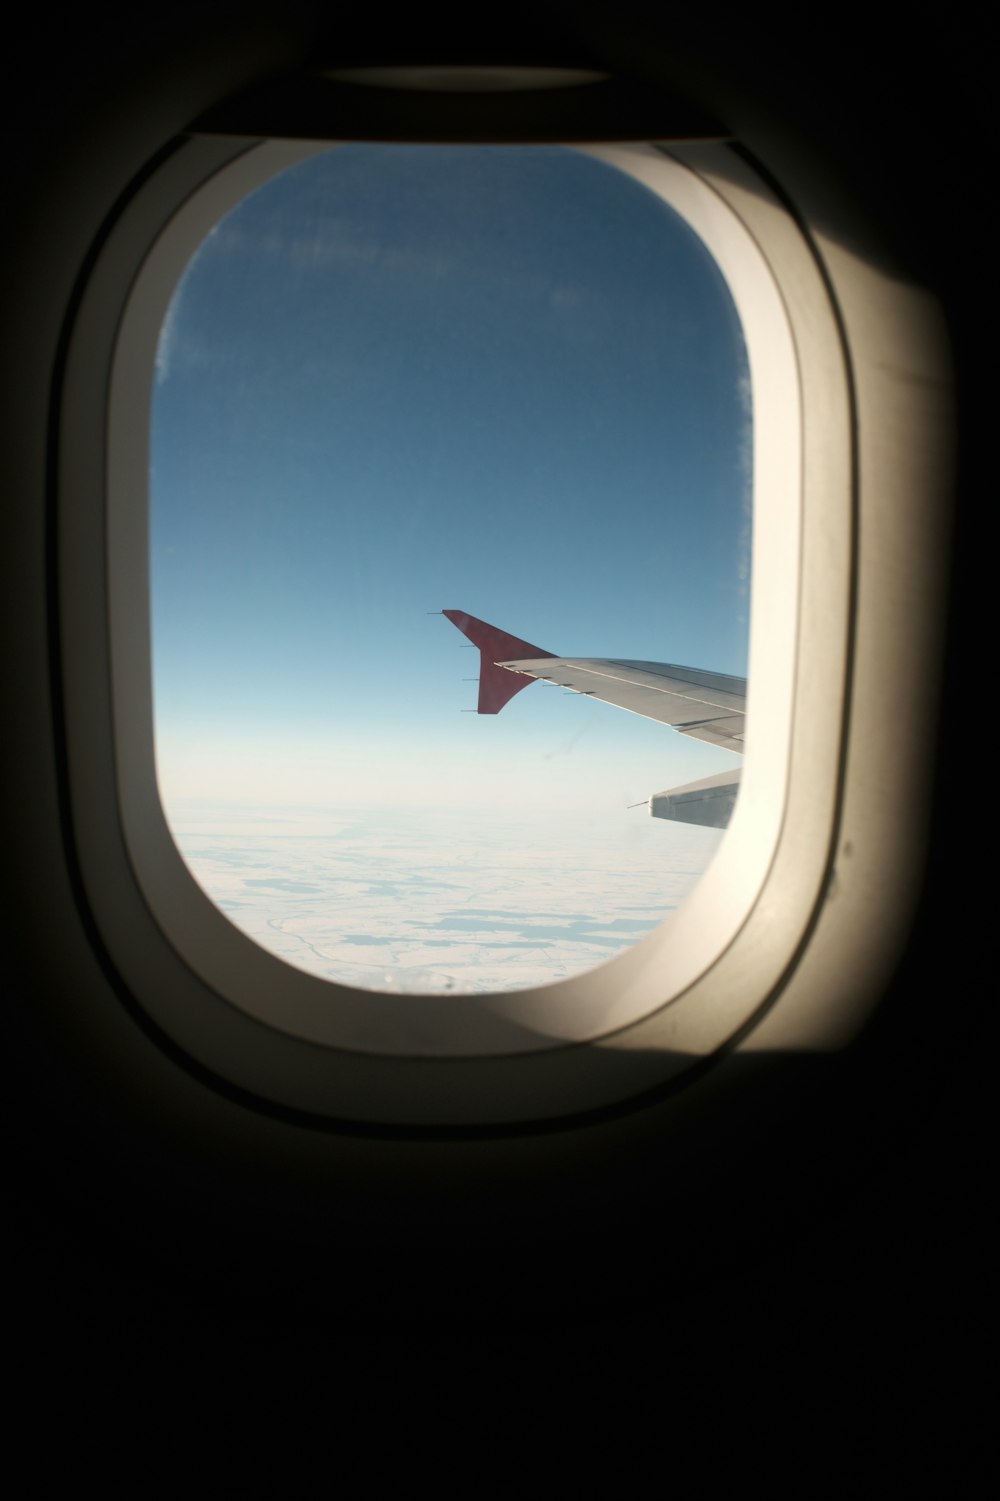 fotografia dell'estremità alare dell'aereo all'interno dell'aeroplano sopra le nuvole durante il giorno